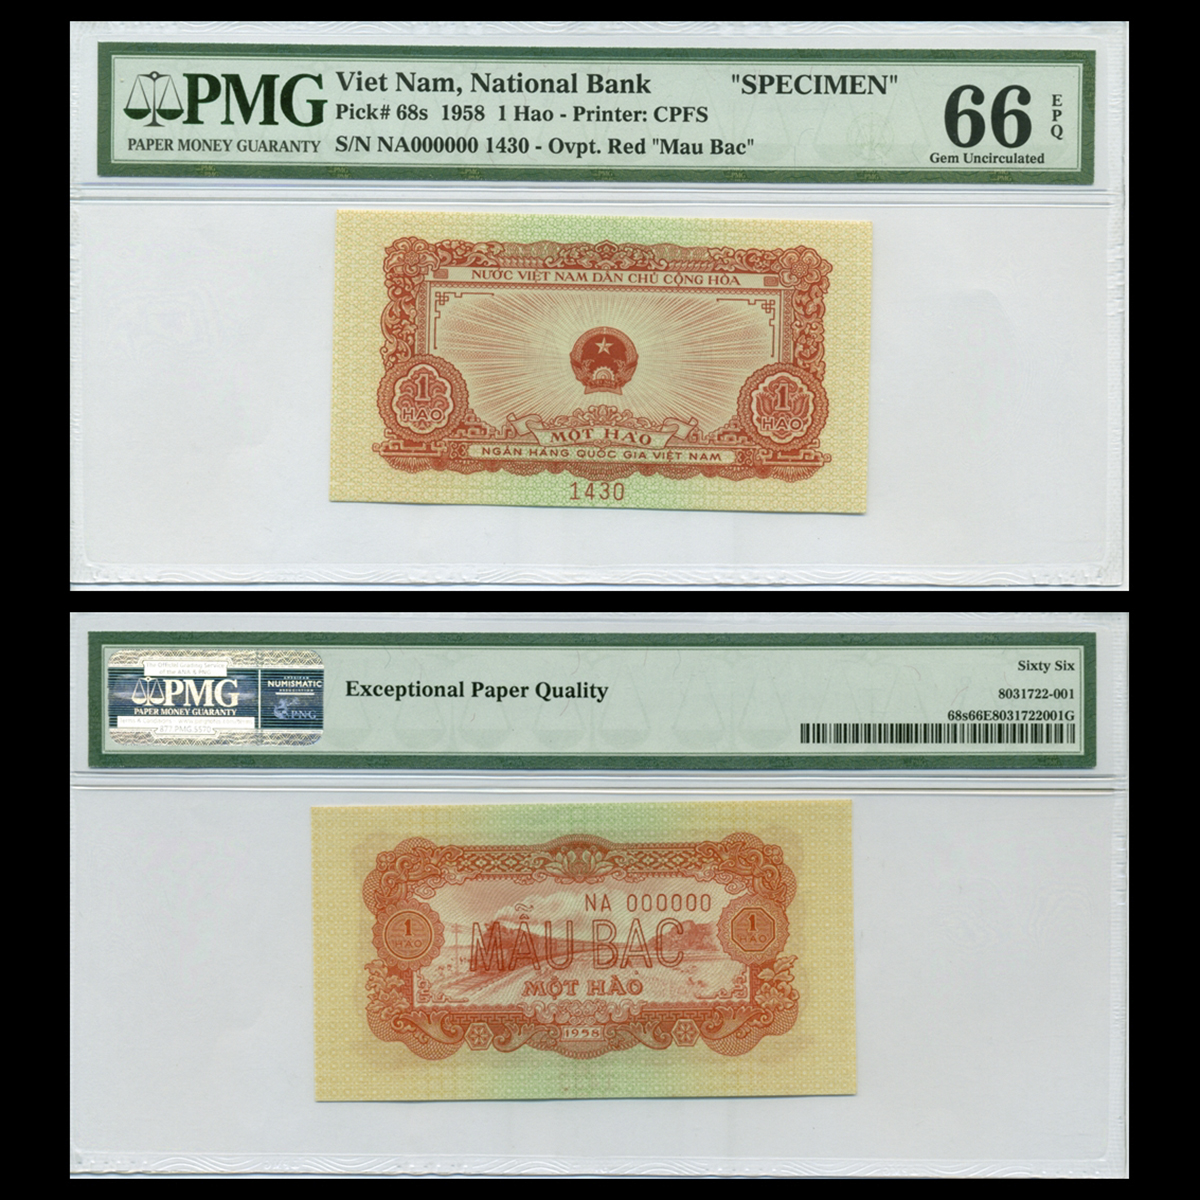 Bộ 7 tờ tiền mẫu 1958 Việt Nam Dân Chủ Cộng Hòa (1 hào, 2 hào, 5 hào, 1 đồng, 2 đồng, 5 đồng, 10 đồng)